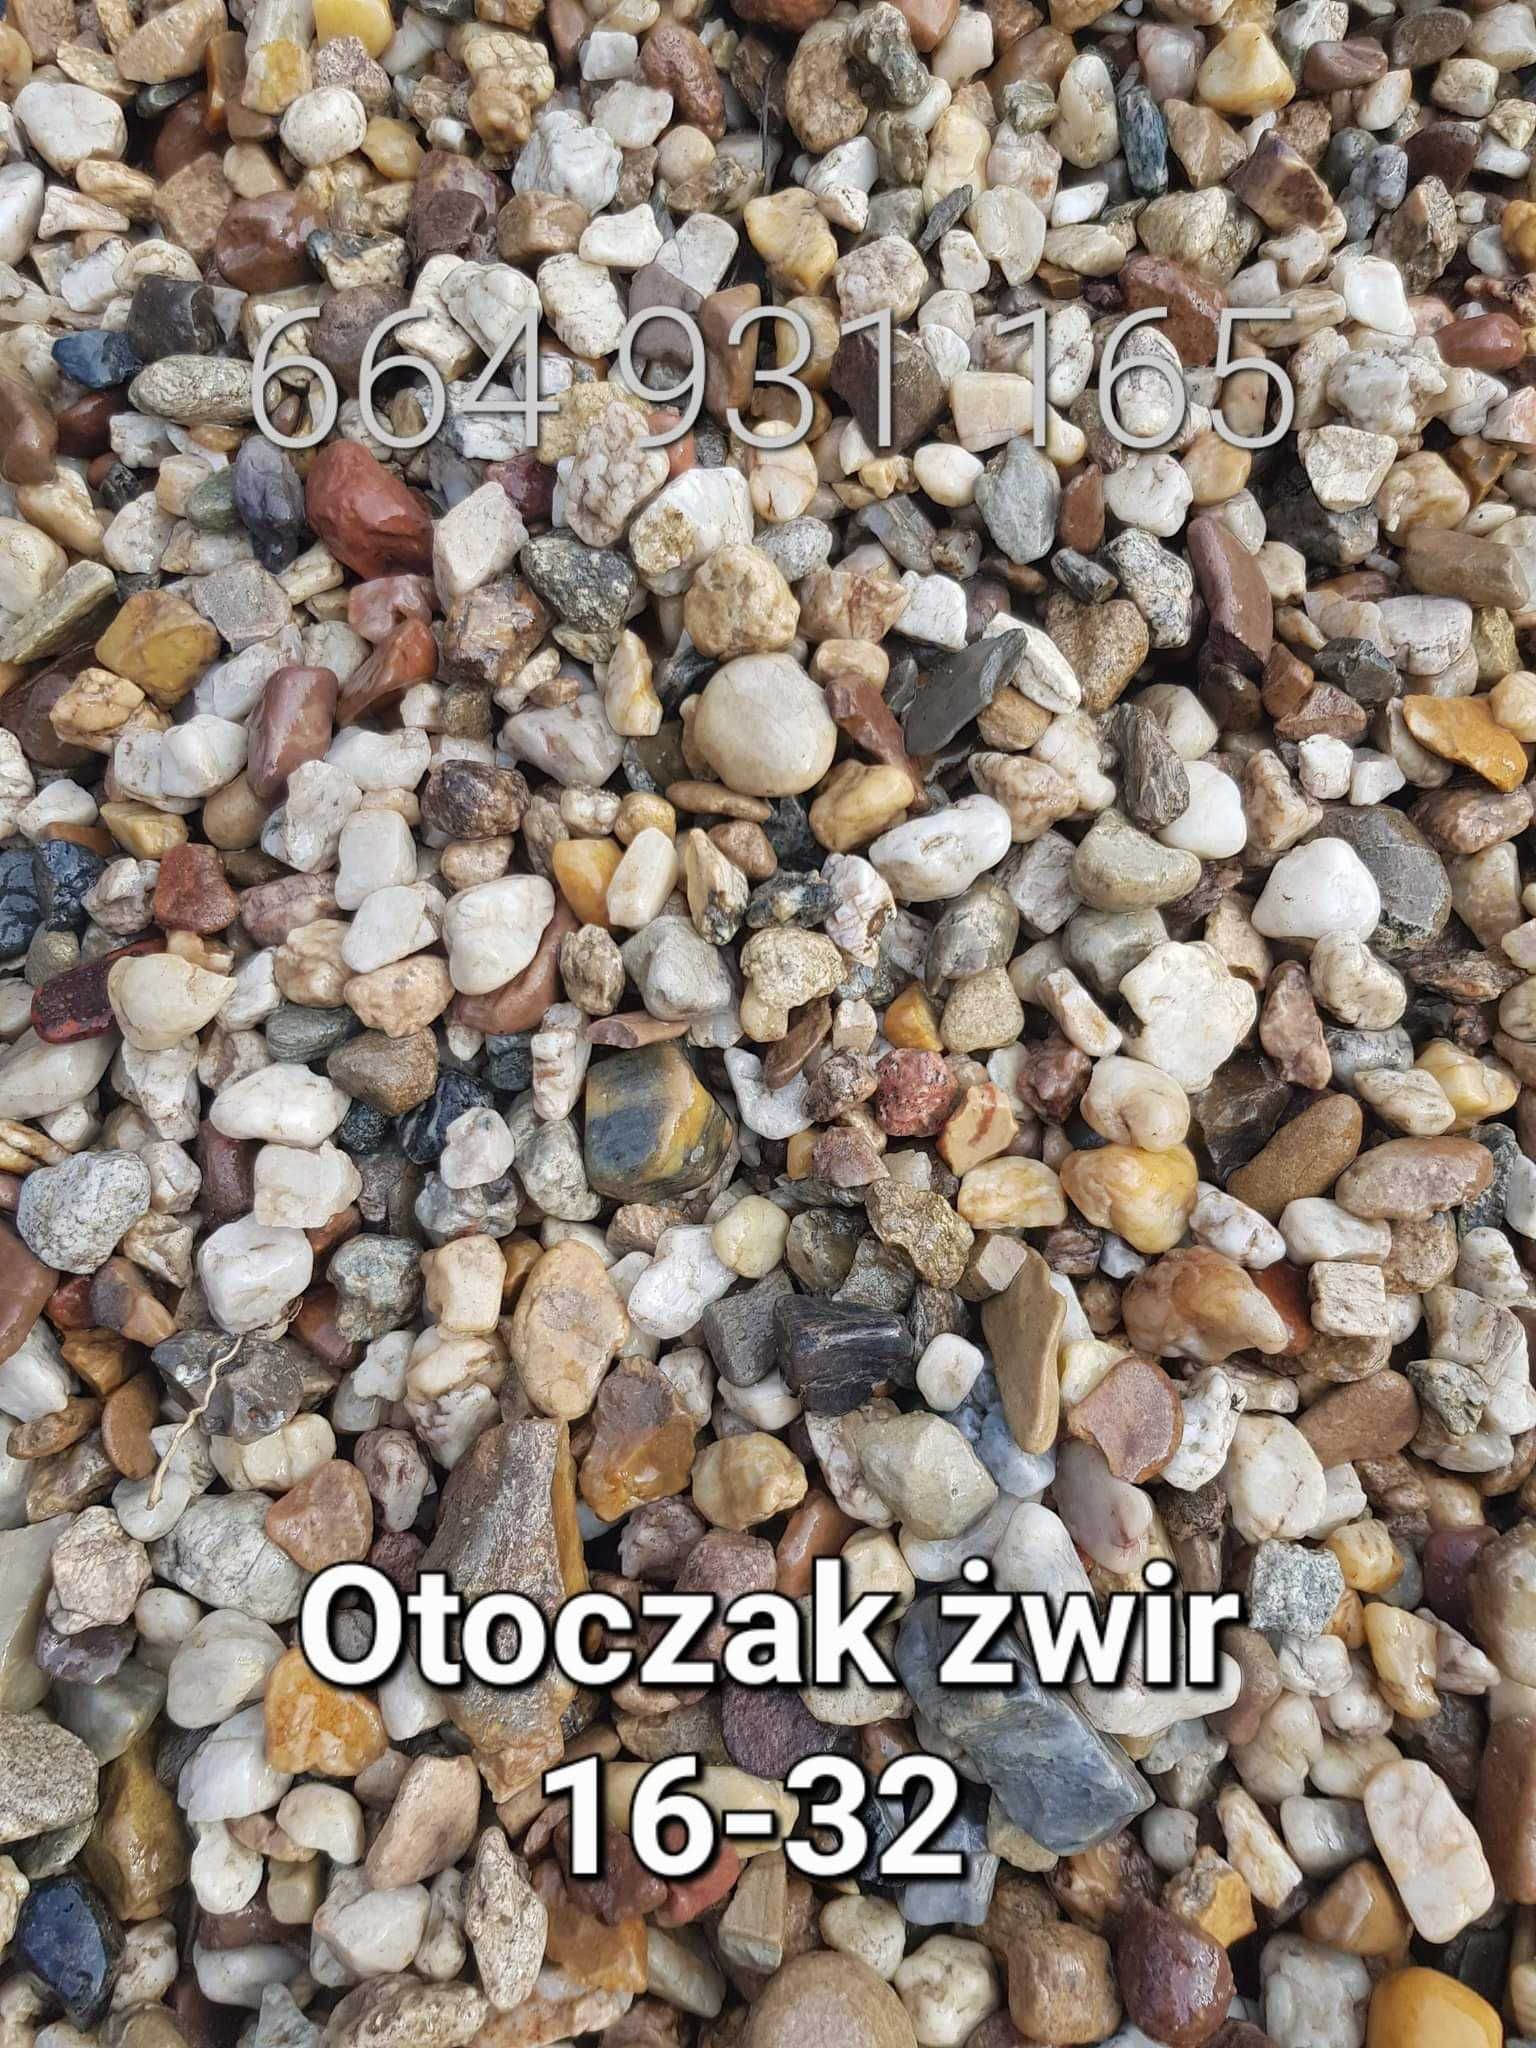 otoczak 16/32 żwir płukany kamień ozdobny ogrodowy granit bazalt kora